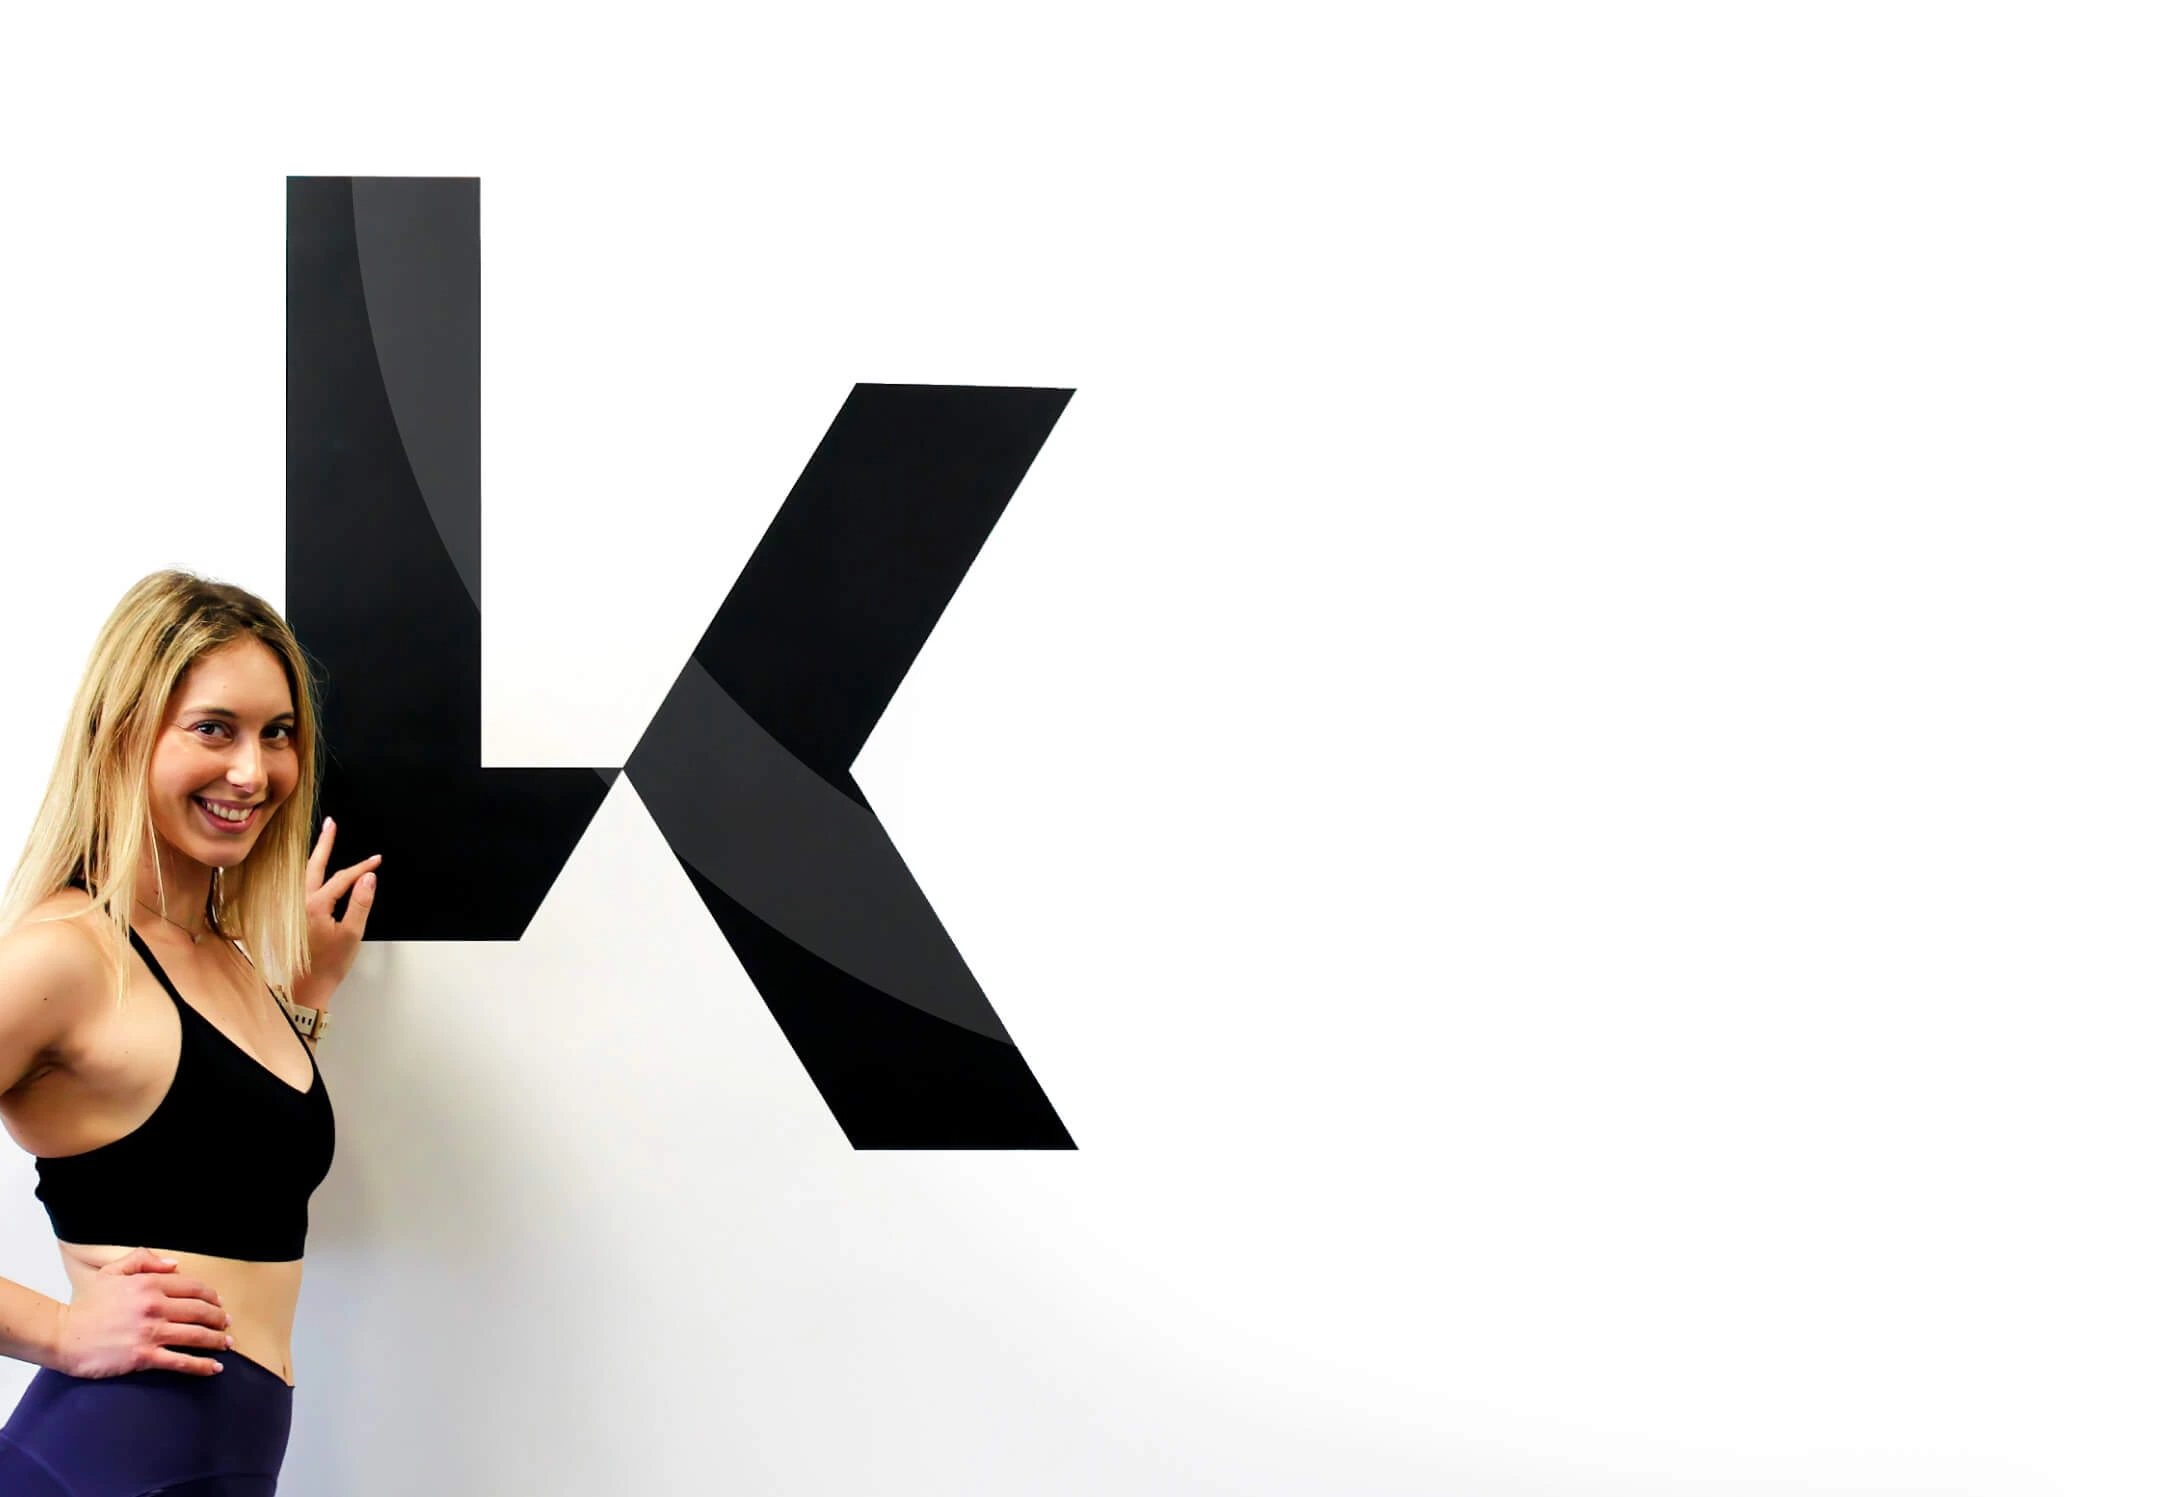 לירון קרני מצטלמת בסטודיו LK על רקע לוגו הסטודיו